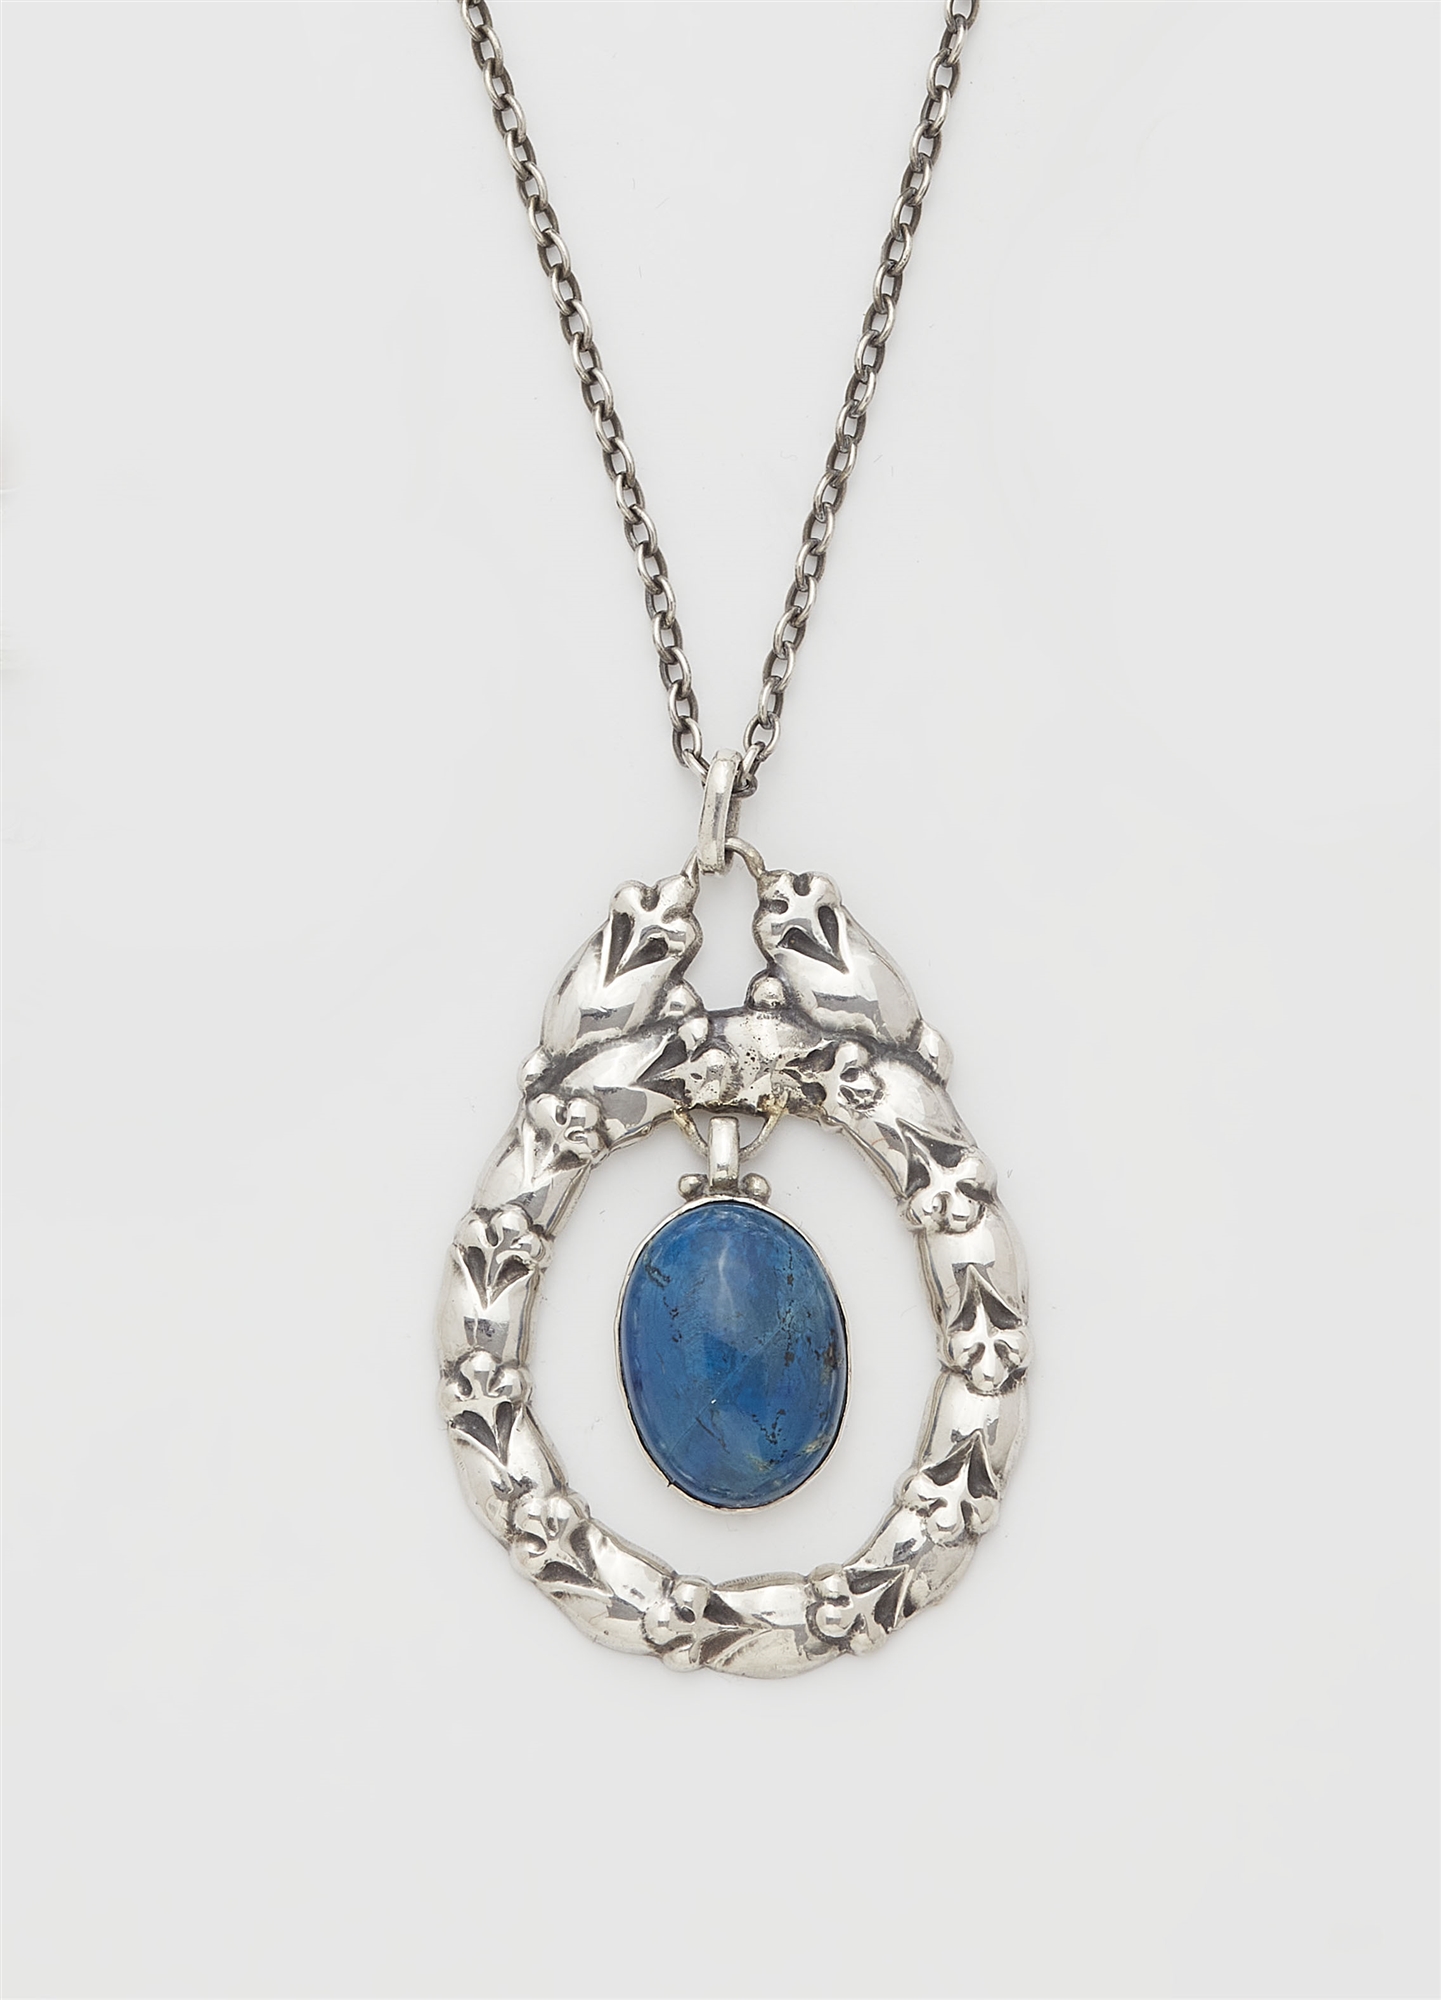 A Jugendstil silver necklace, model no. 20